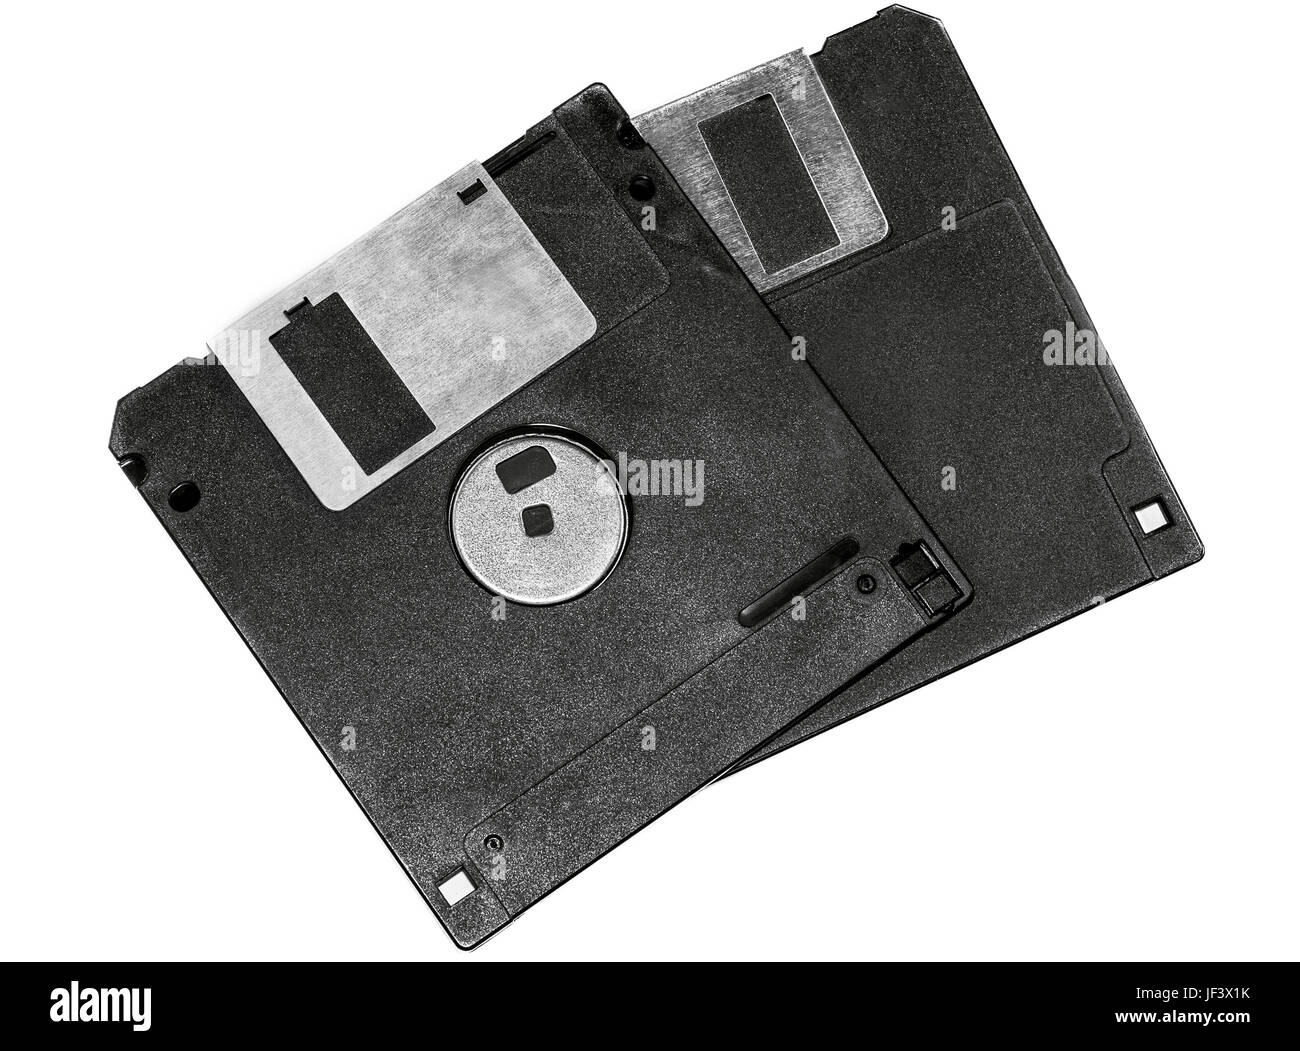 Two floppy disks Stock Photo